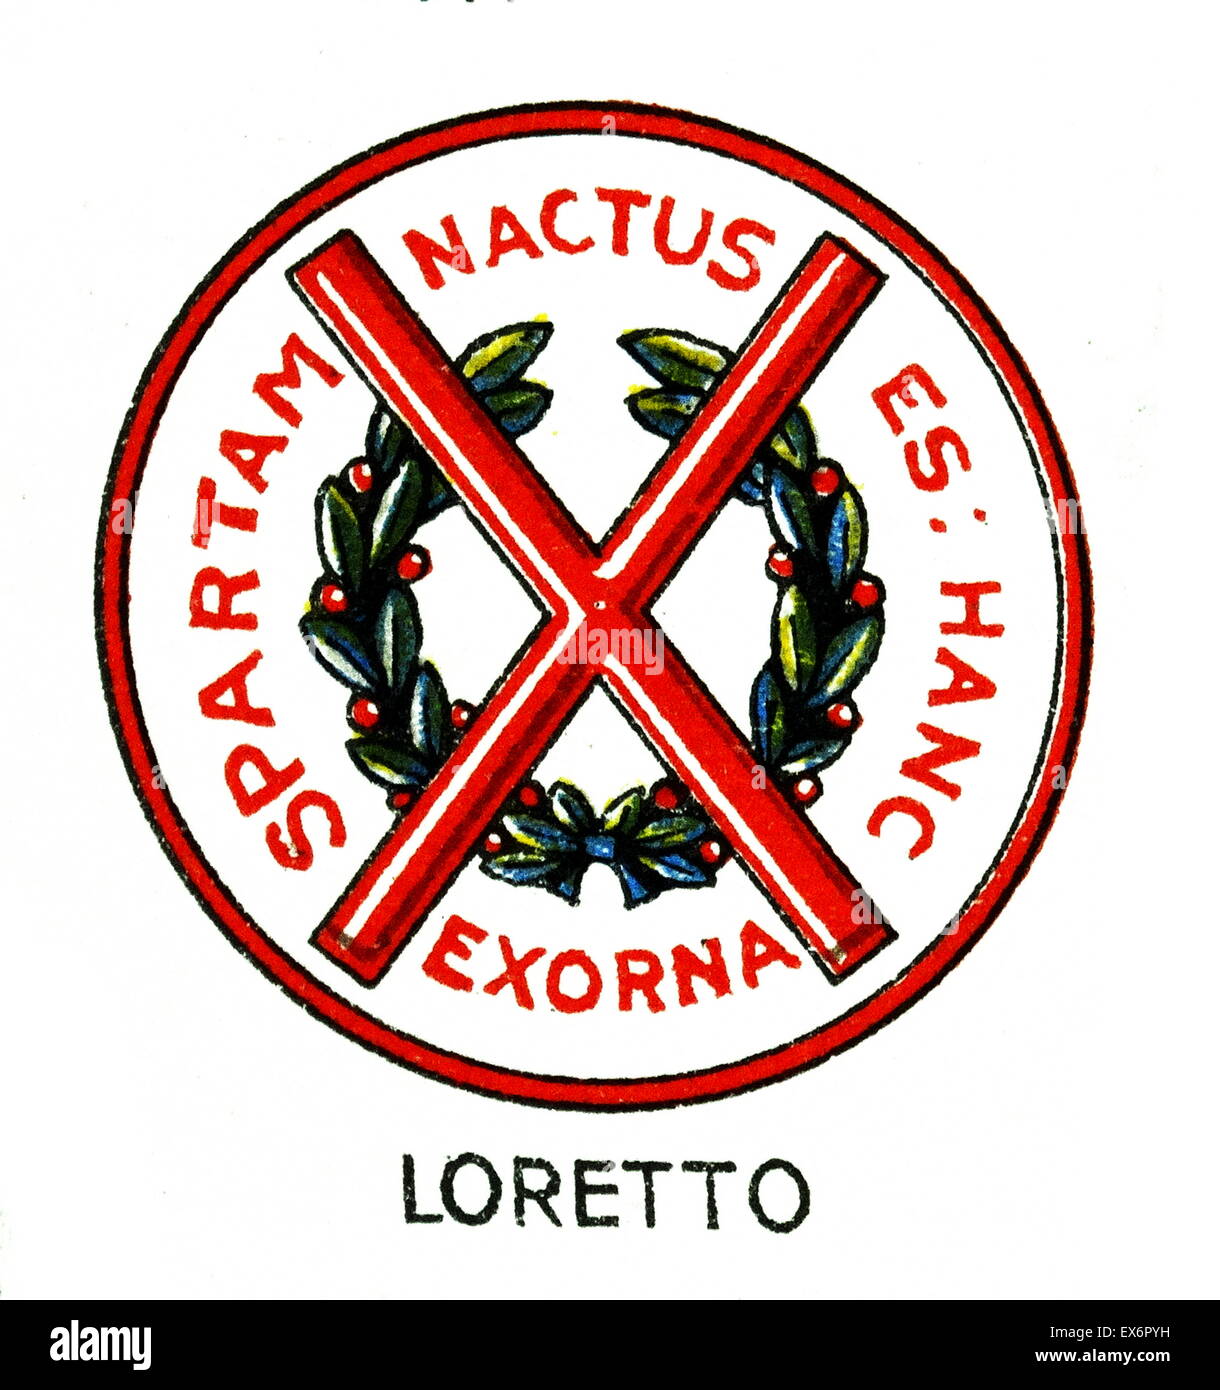 Emblema della scuola di Loreto, Musselburgh, East Lothian, Scozia. Scuola di Loreto è un organismo indipendente di imbarco e giorno scuola per ragazzi e ragazze. La scuola è stata fondata nel 1827. Foto Stock